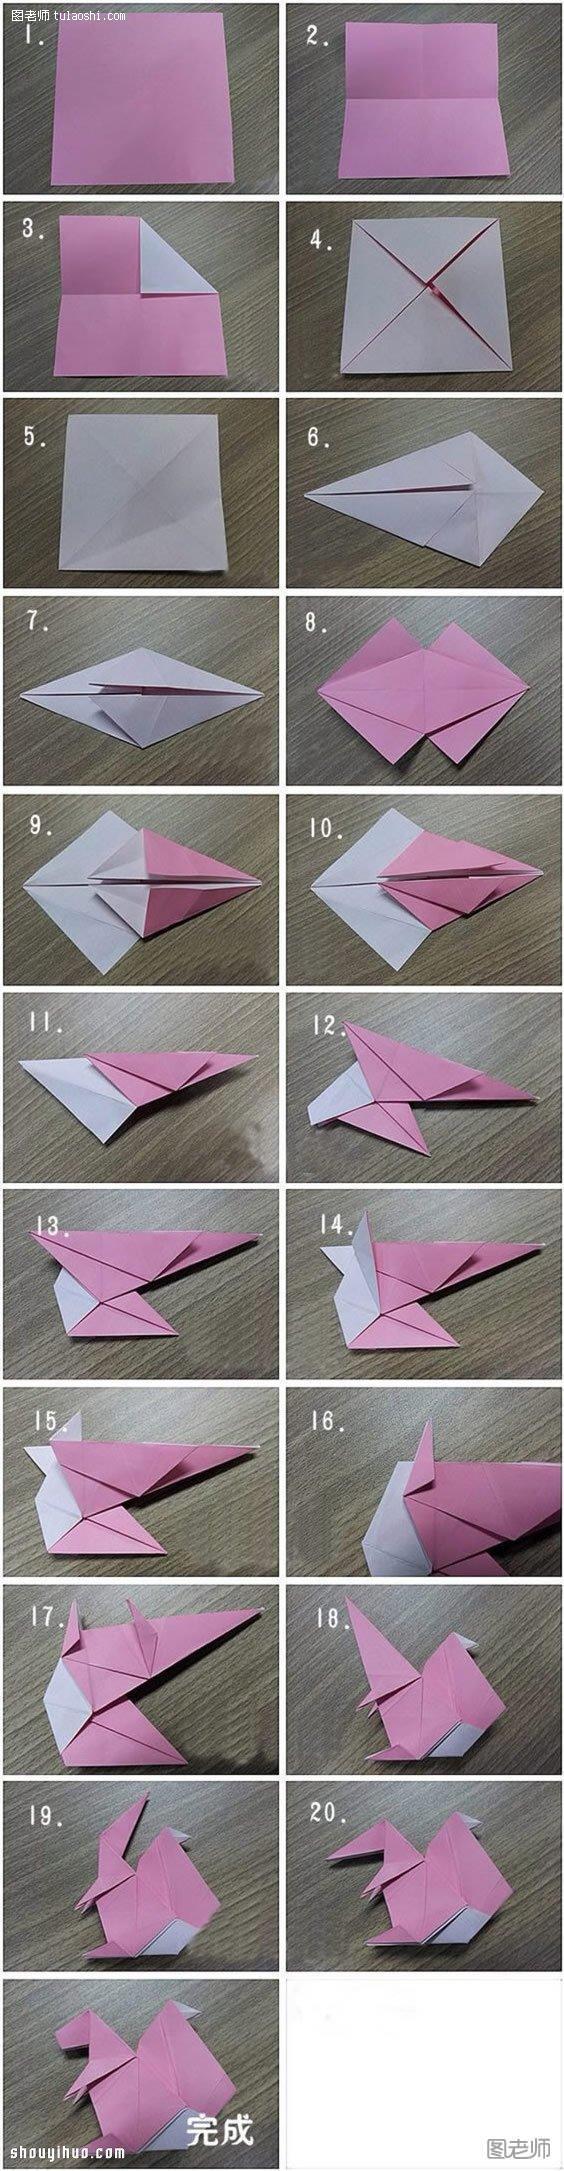 折纸松鼠的折法图解 手工折纸松鼠方法教程 - www.shouyihuo.com